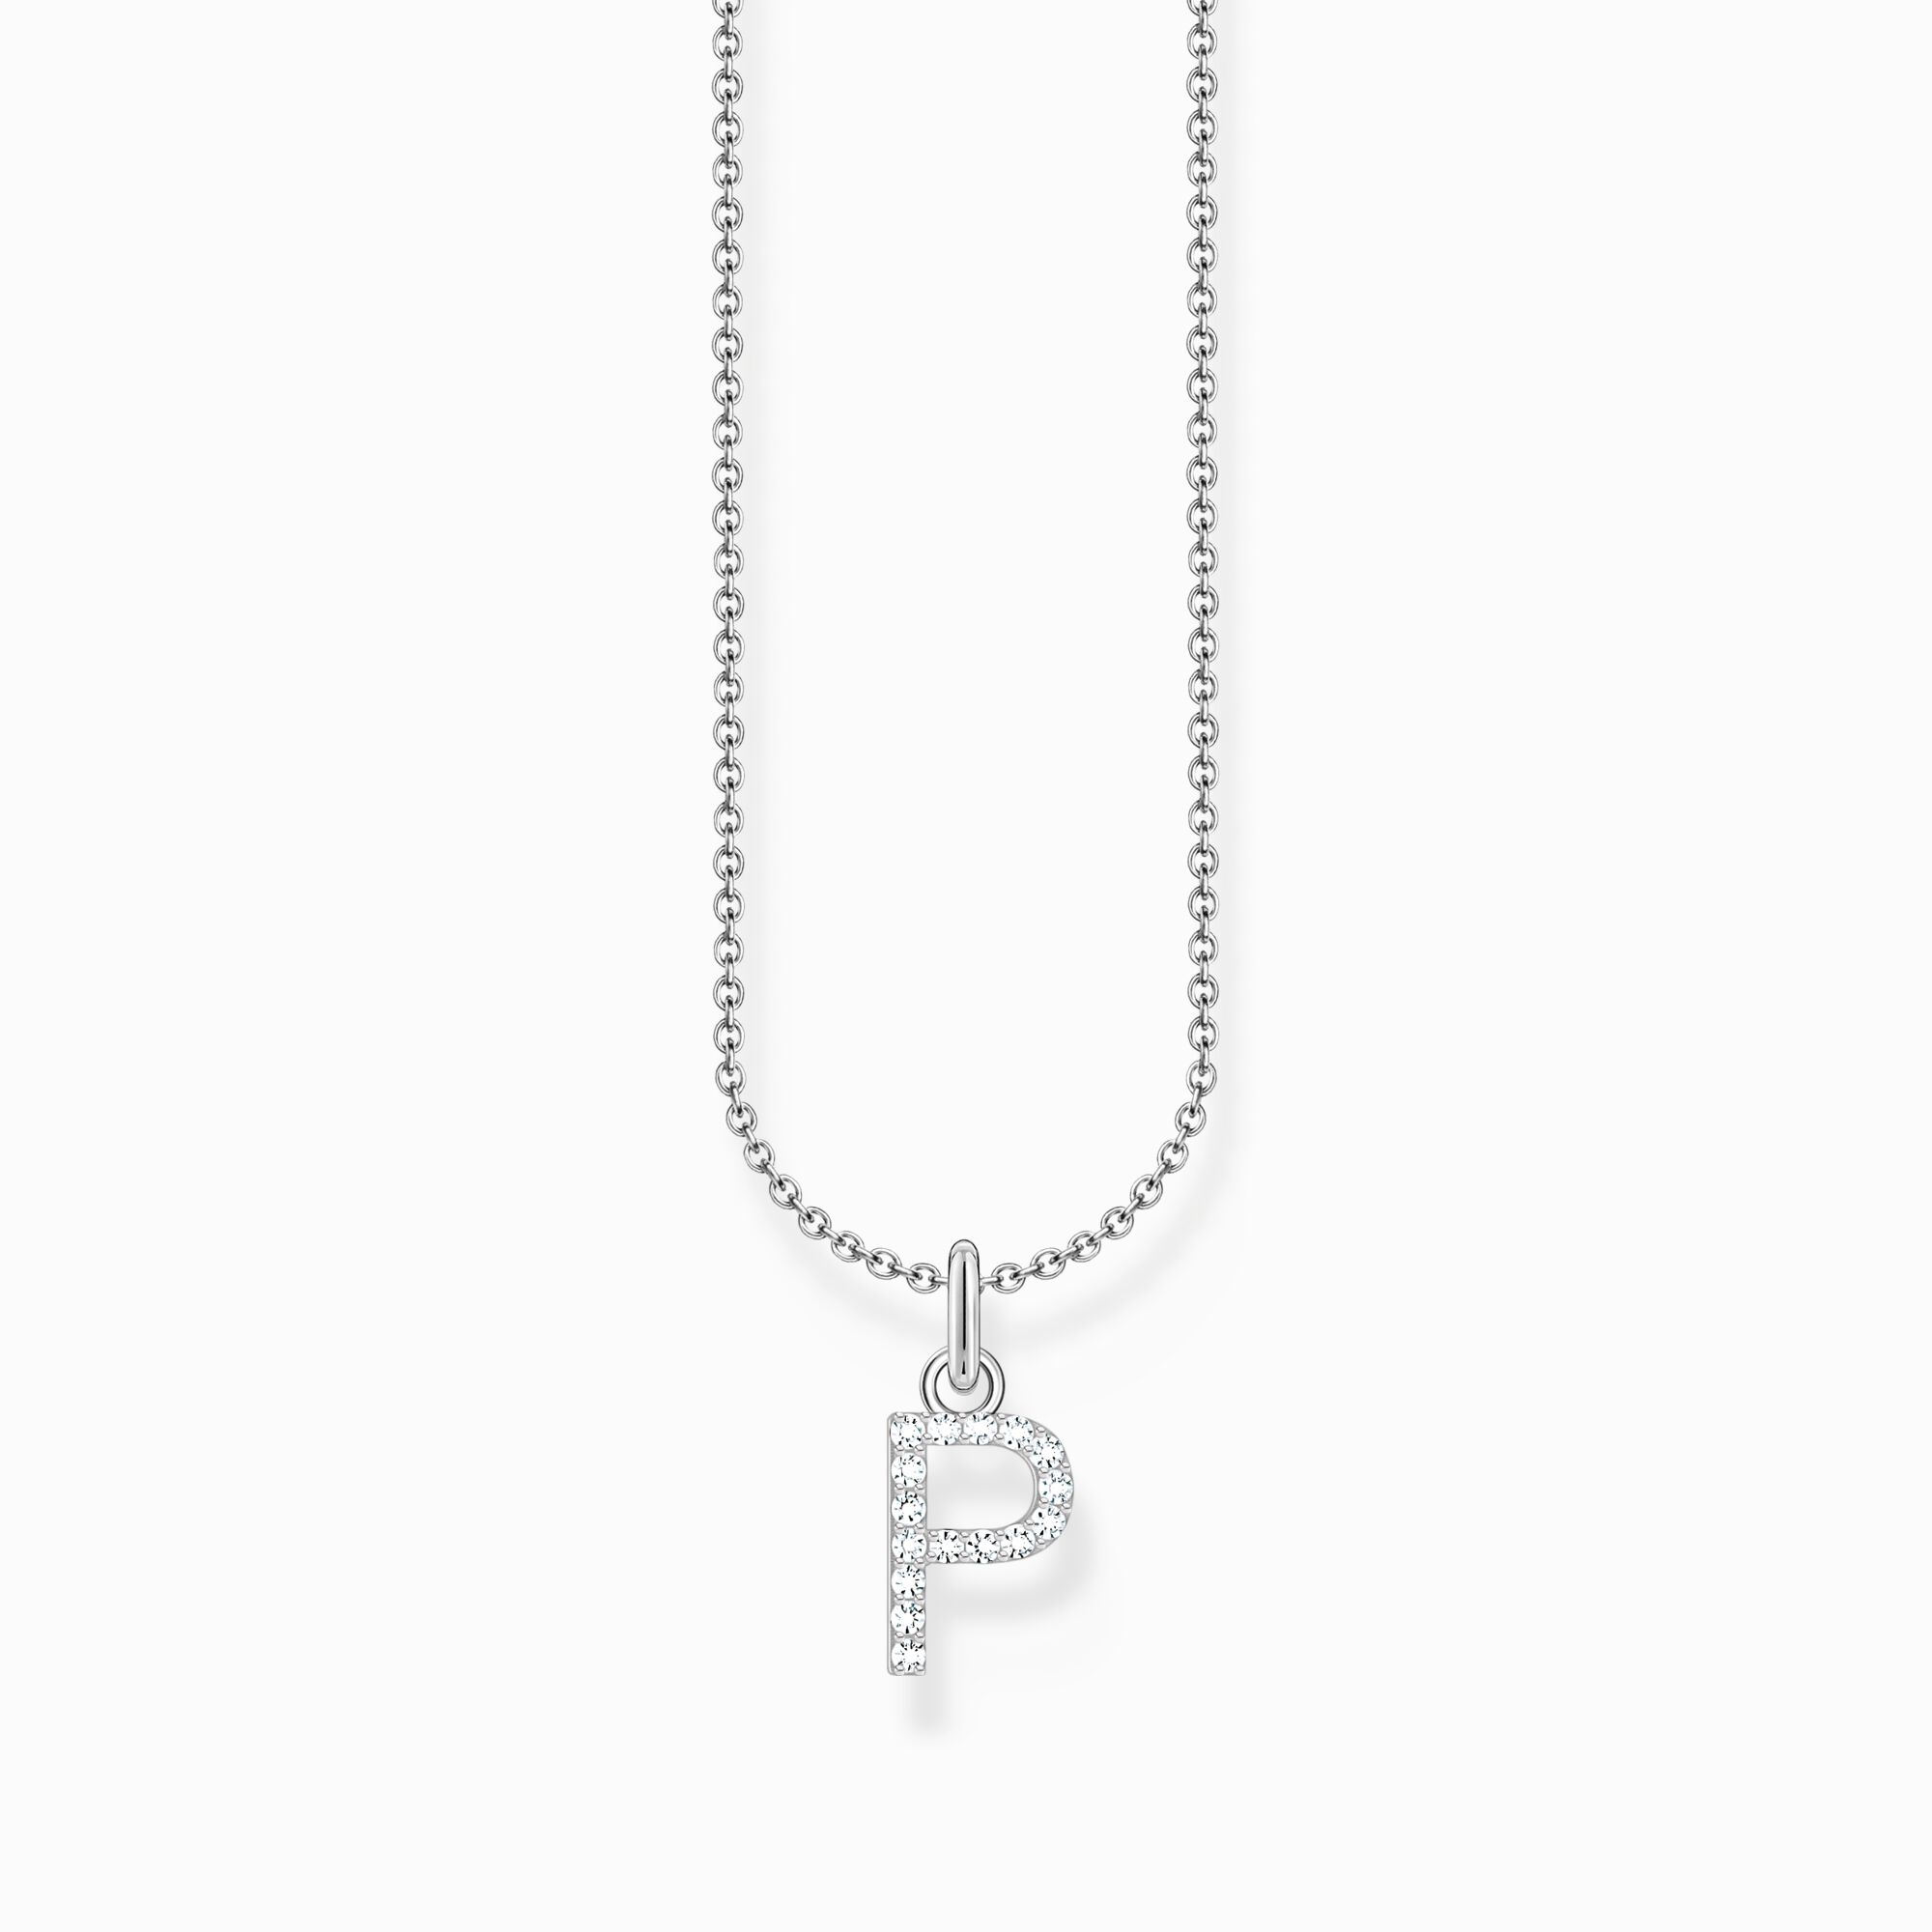 Halsband med bokstaven P, silver ur kollektionen Charming Collection i THOMAS SABO:s onlineshop